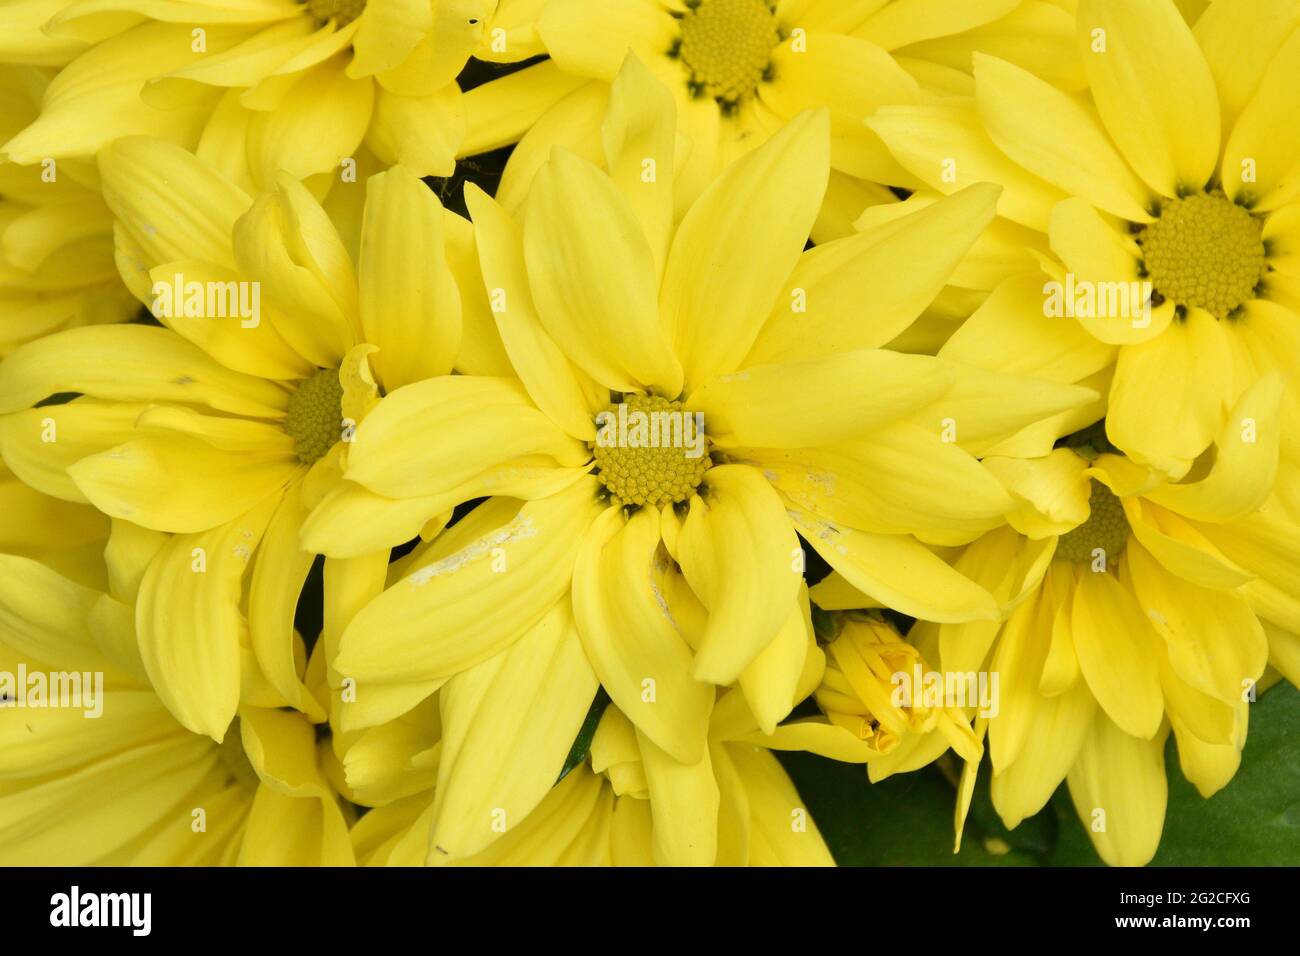 Hintergrund von gelben Blüten der Chrysantheme (Chrysantheme indicum). Garten Topfpflanze im Frühjahr. Stockfoto